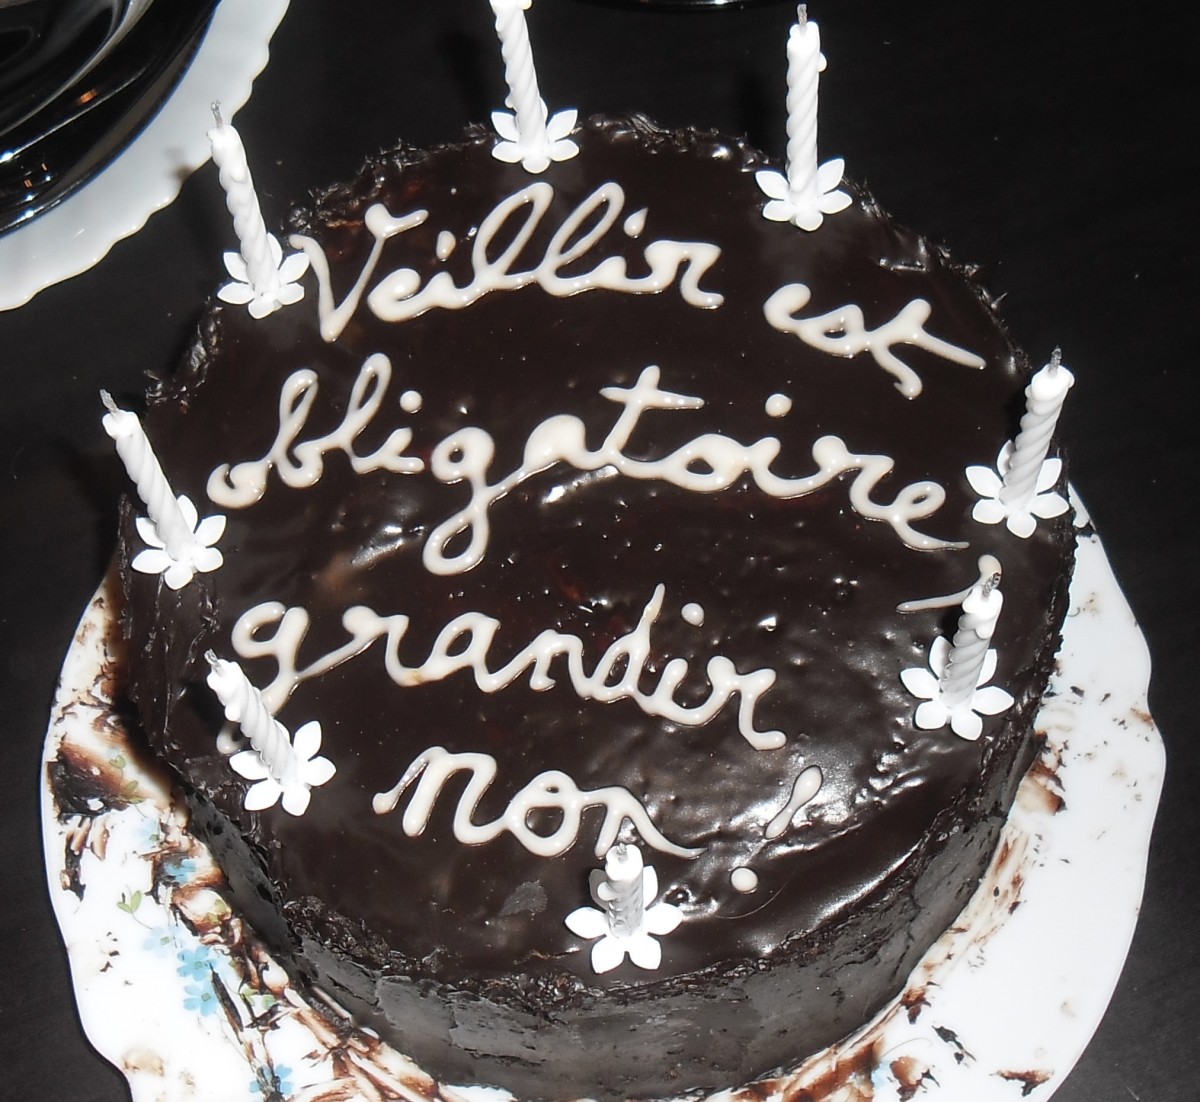 Un gâteau avec une ganache au chocolat et des bougies pour l'anniversaire de Florian avec écrit : "Vieillir est obligatoire, grandir non !"